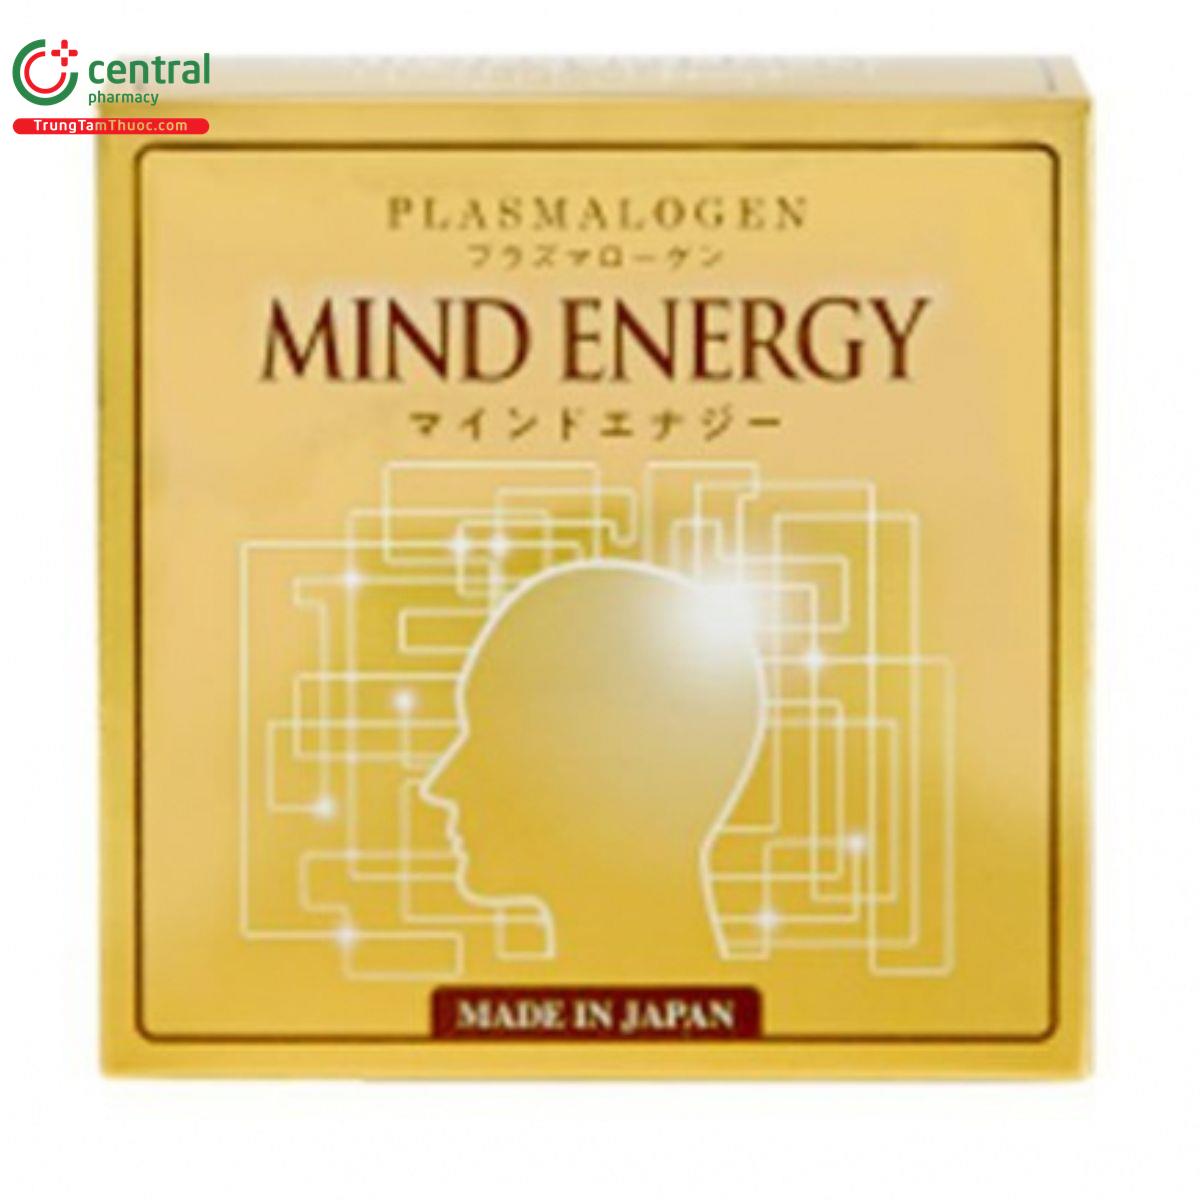 mind energy 7 P6868